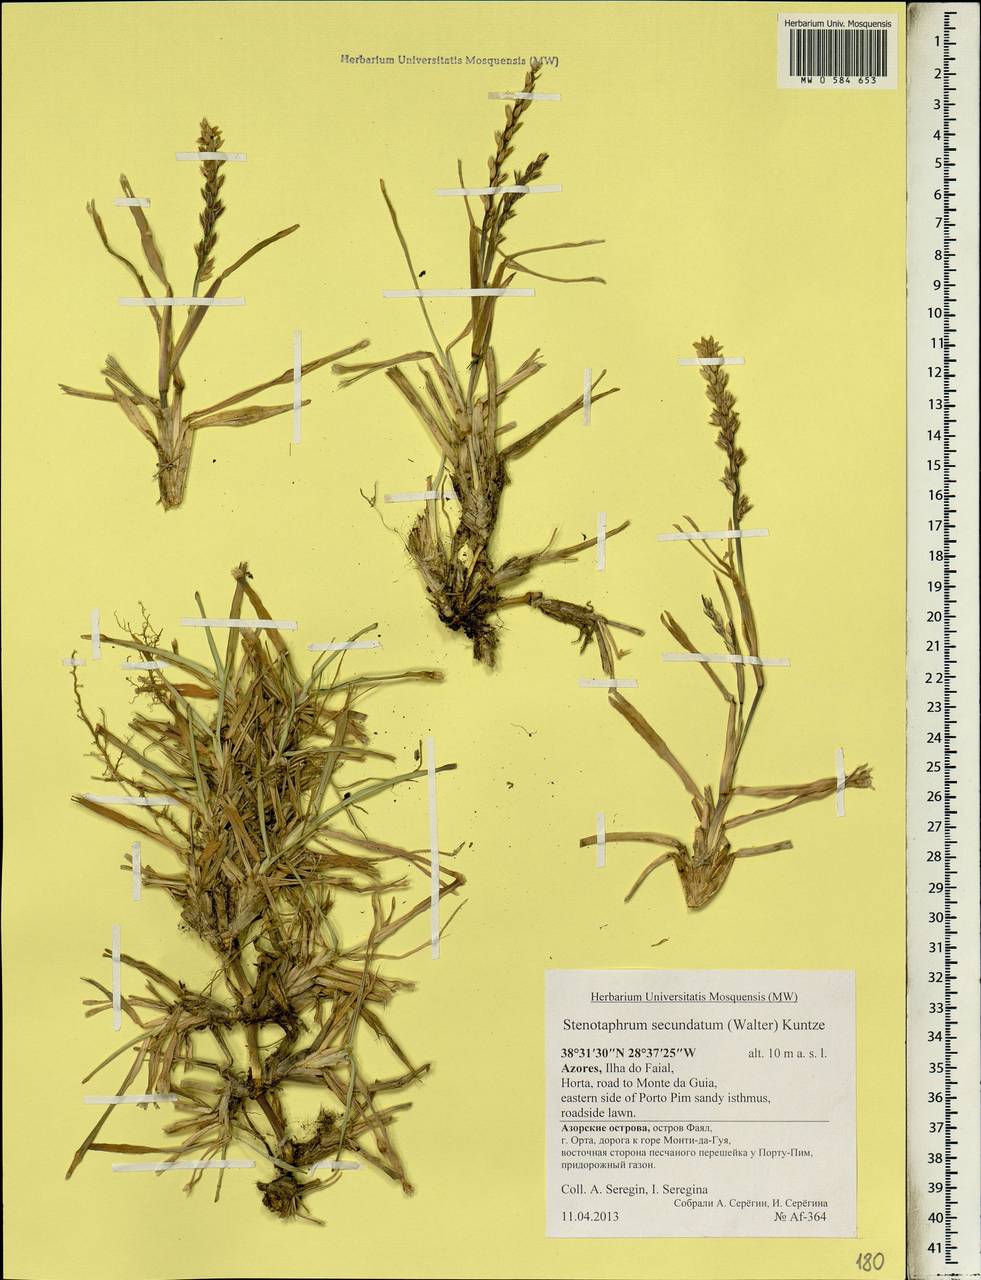 Stenotaphrum secundatum (Walter) Kuntze, Африка (AFR) (Португалия)